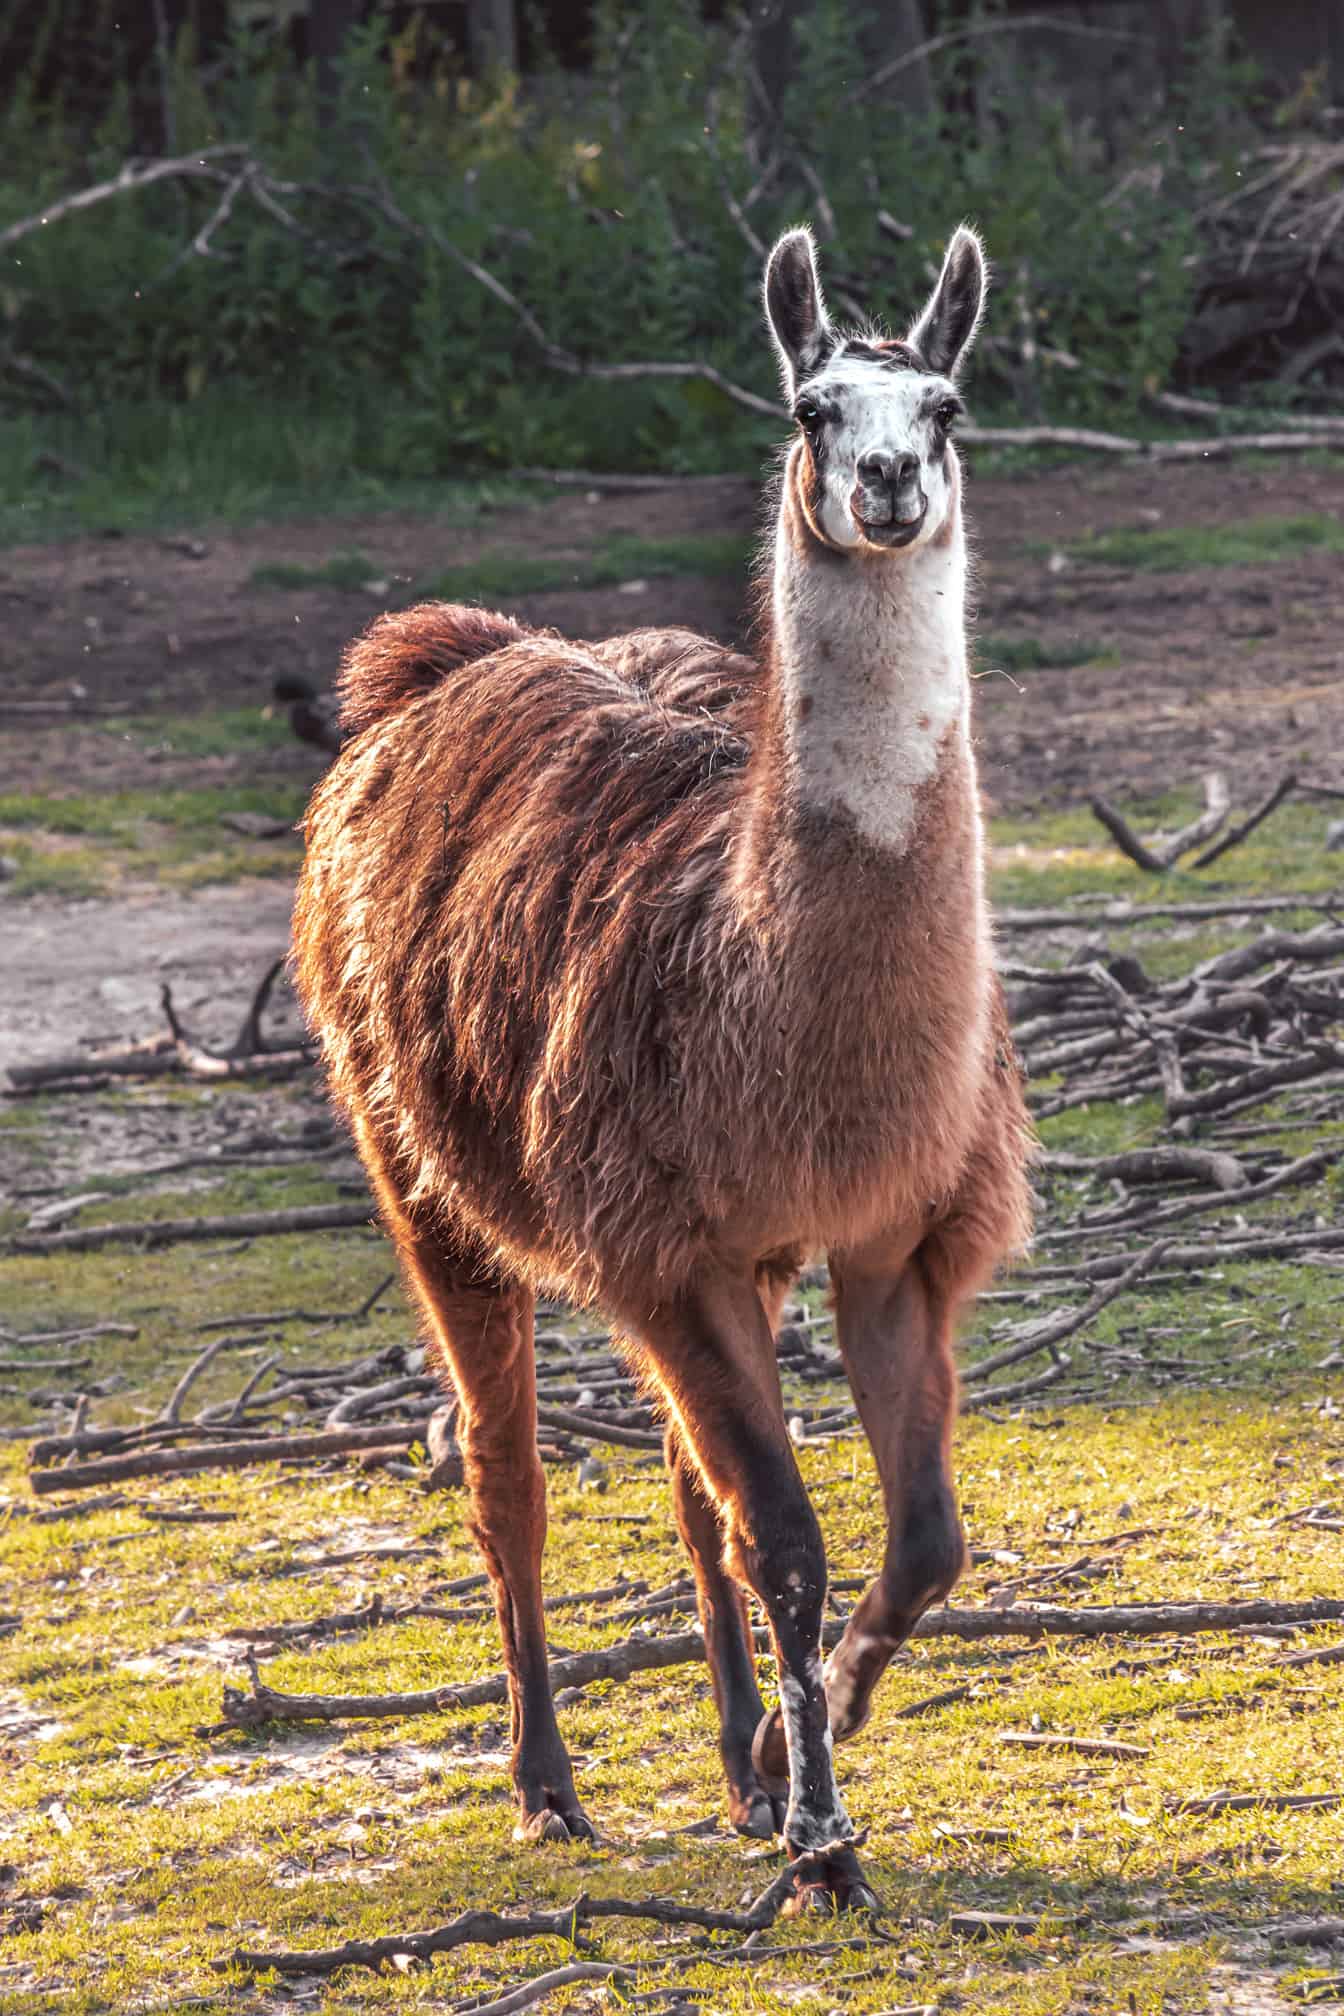 Világosbarna (Lama glama) állat a vadonban, természetes élőhelyen